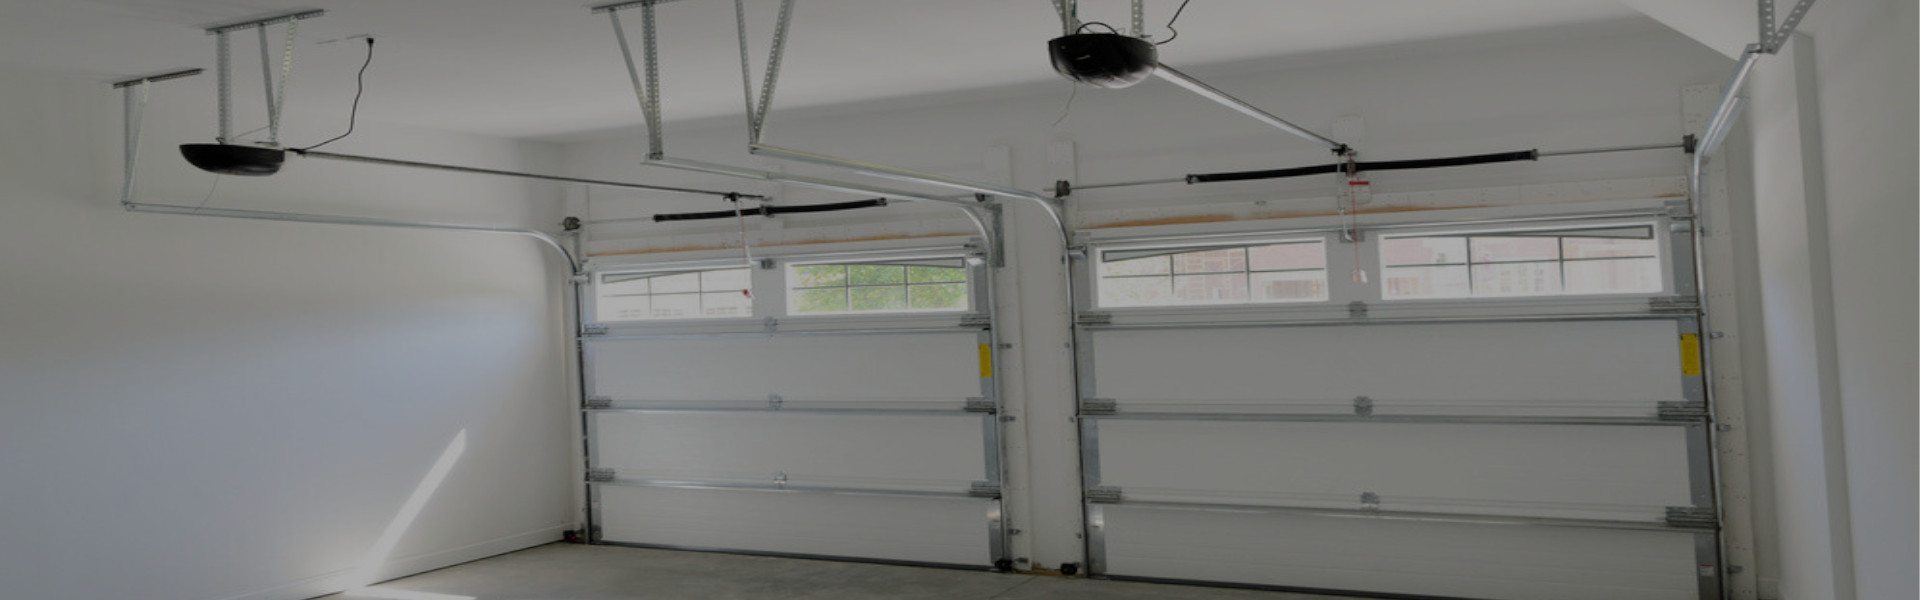 Slider Garage Door Repair, Glaziers in West Wickham, BR4